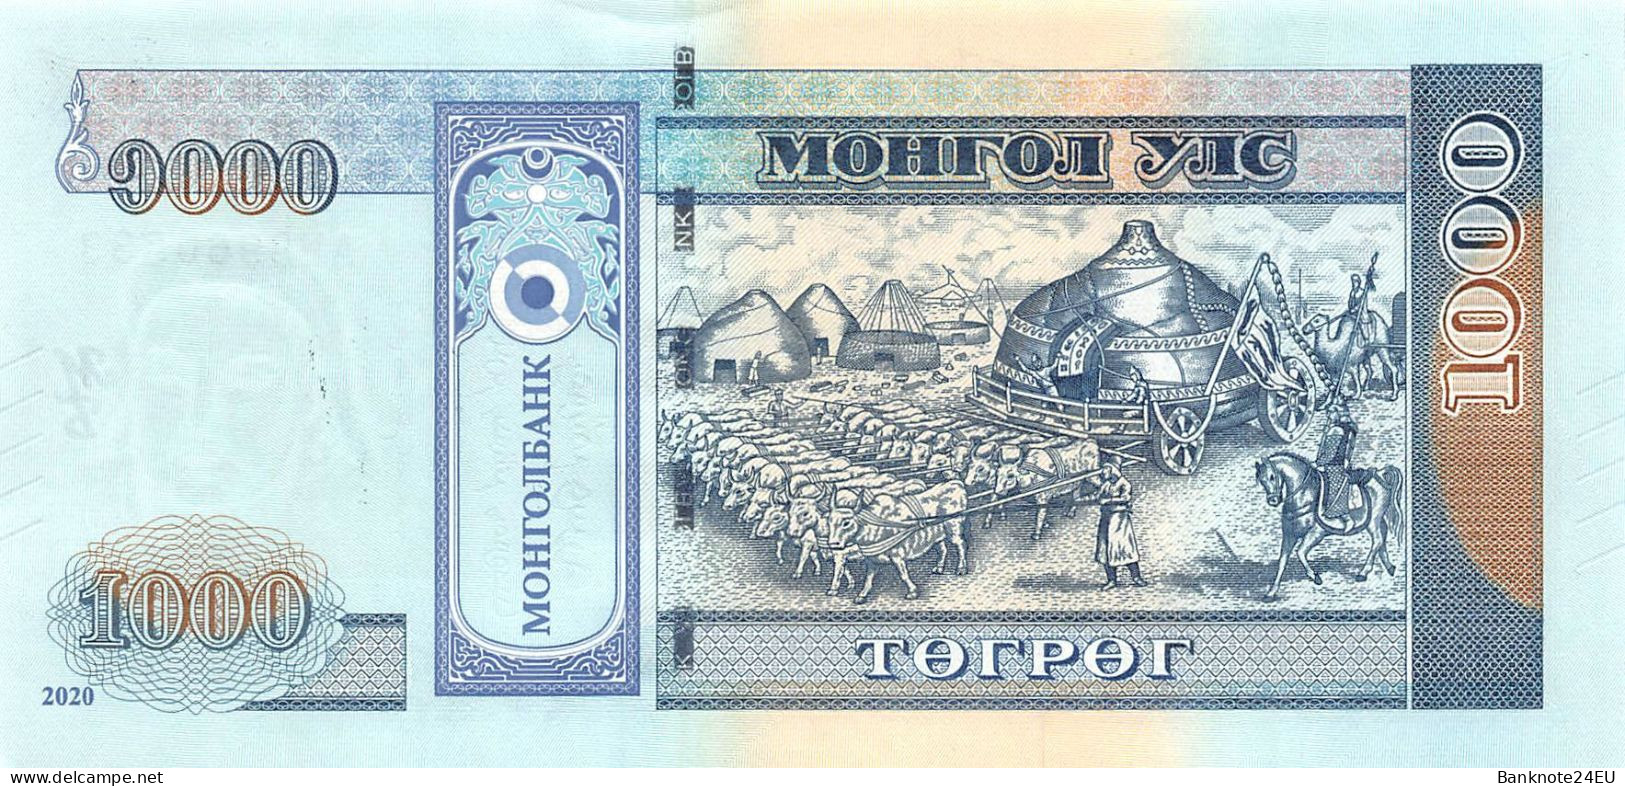 Mongolia 1000 Togrog 2020 Unc Pn 75a - Mongolia